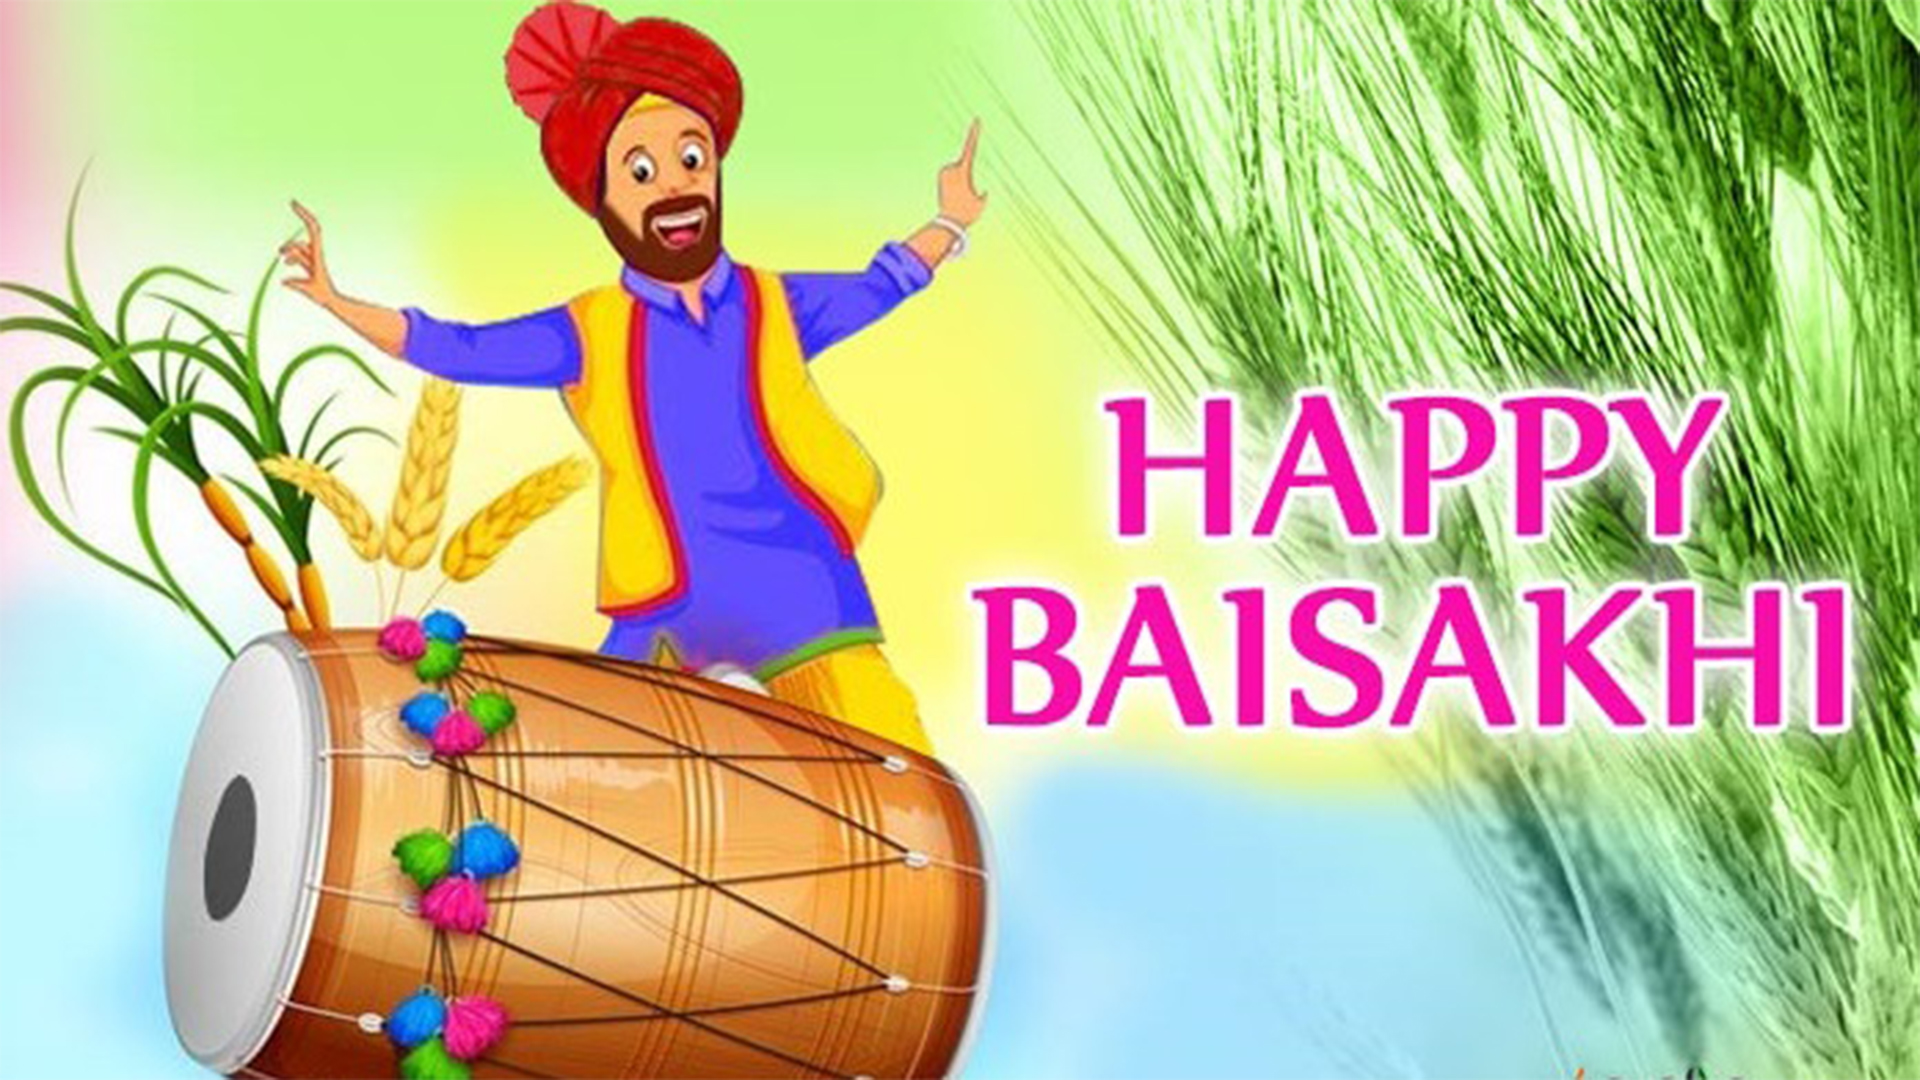 happy baisakhi wishes image